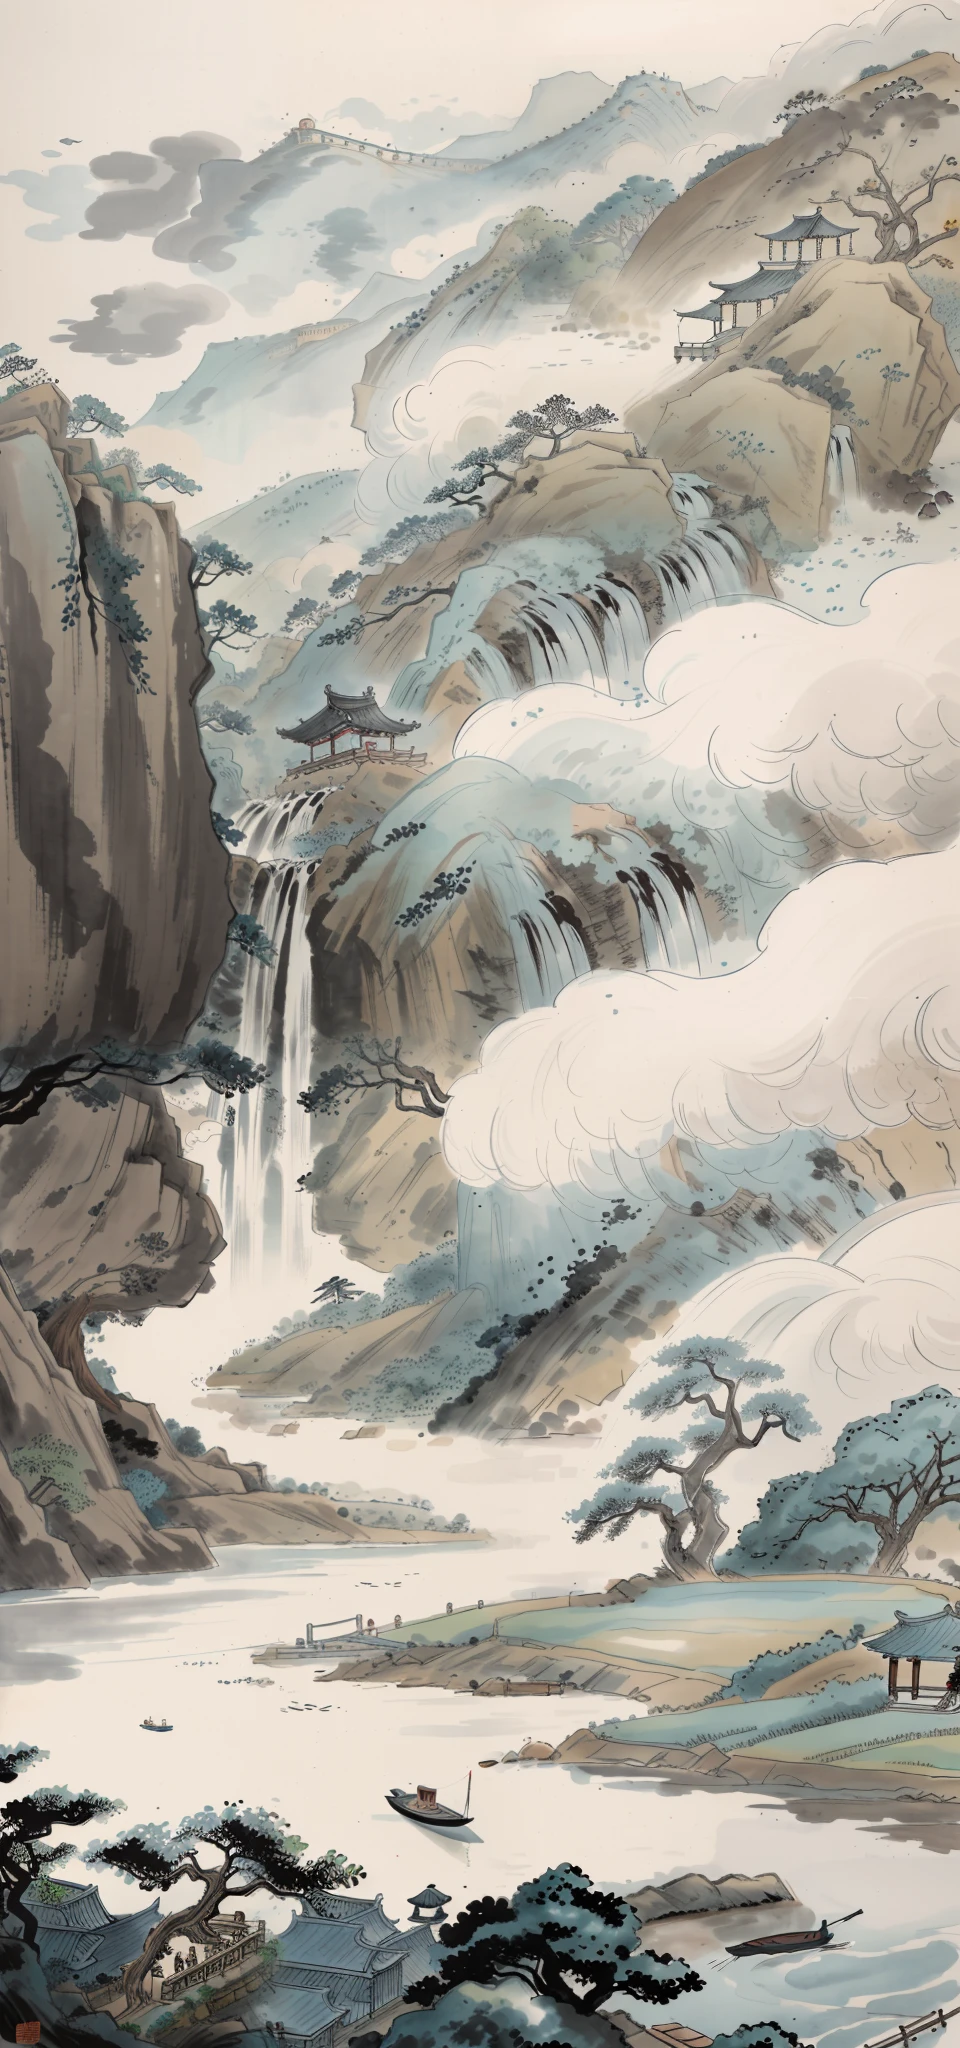 國畫墨水畫,一个女孩，一片寧靜（背景中的大樹，石瀑布，雜樹，流動的水,遠樹,雜草,小船,碼頭,天空空白的雲彩,五、六間農舍）